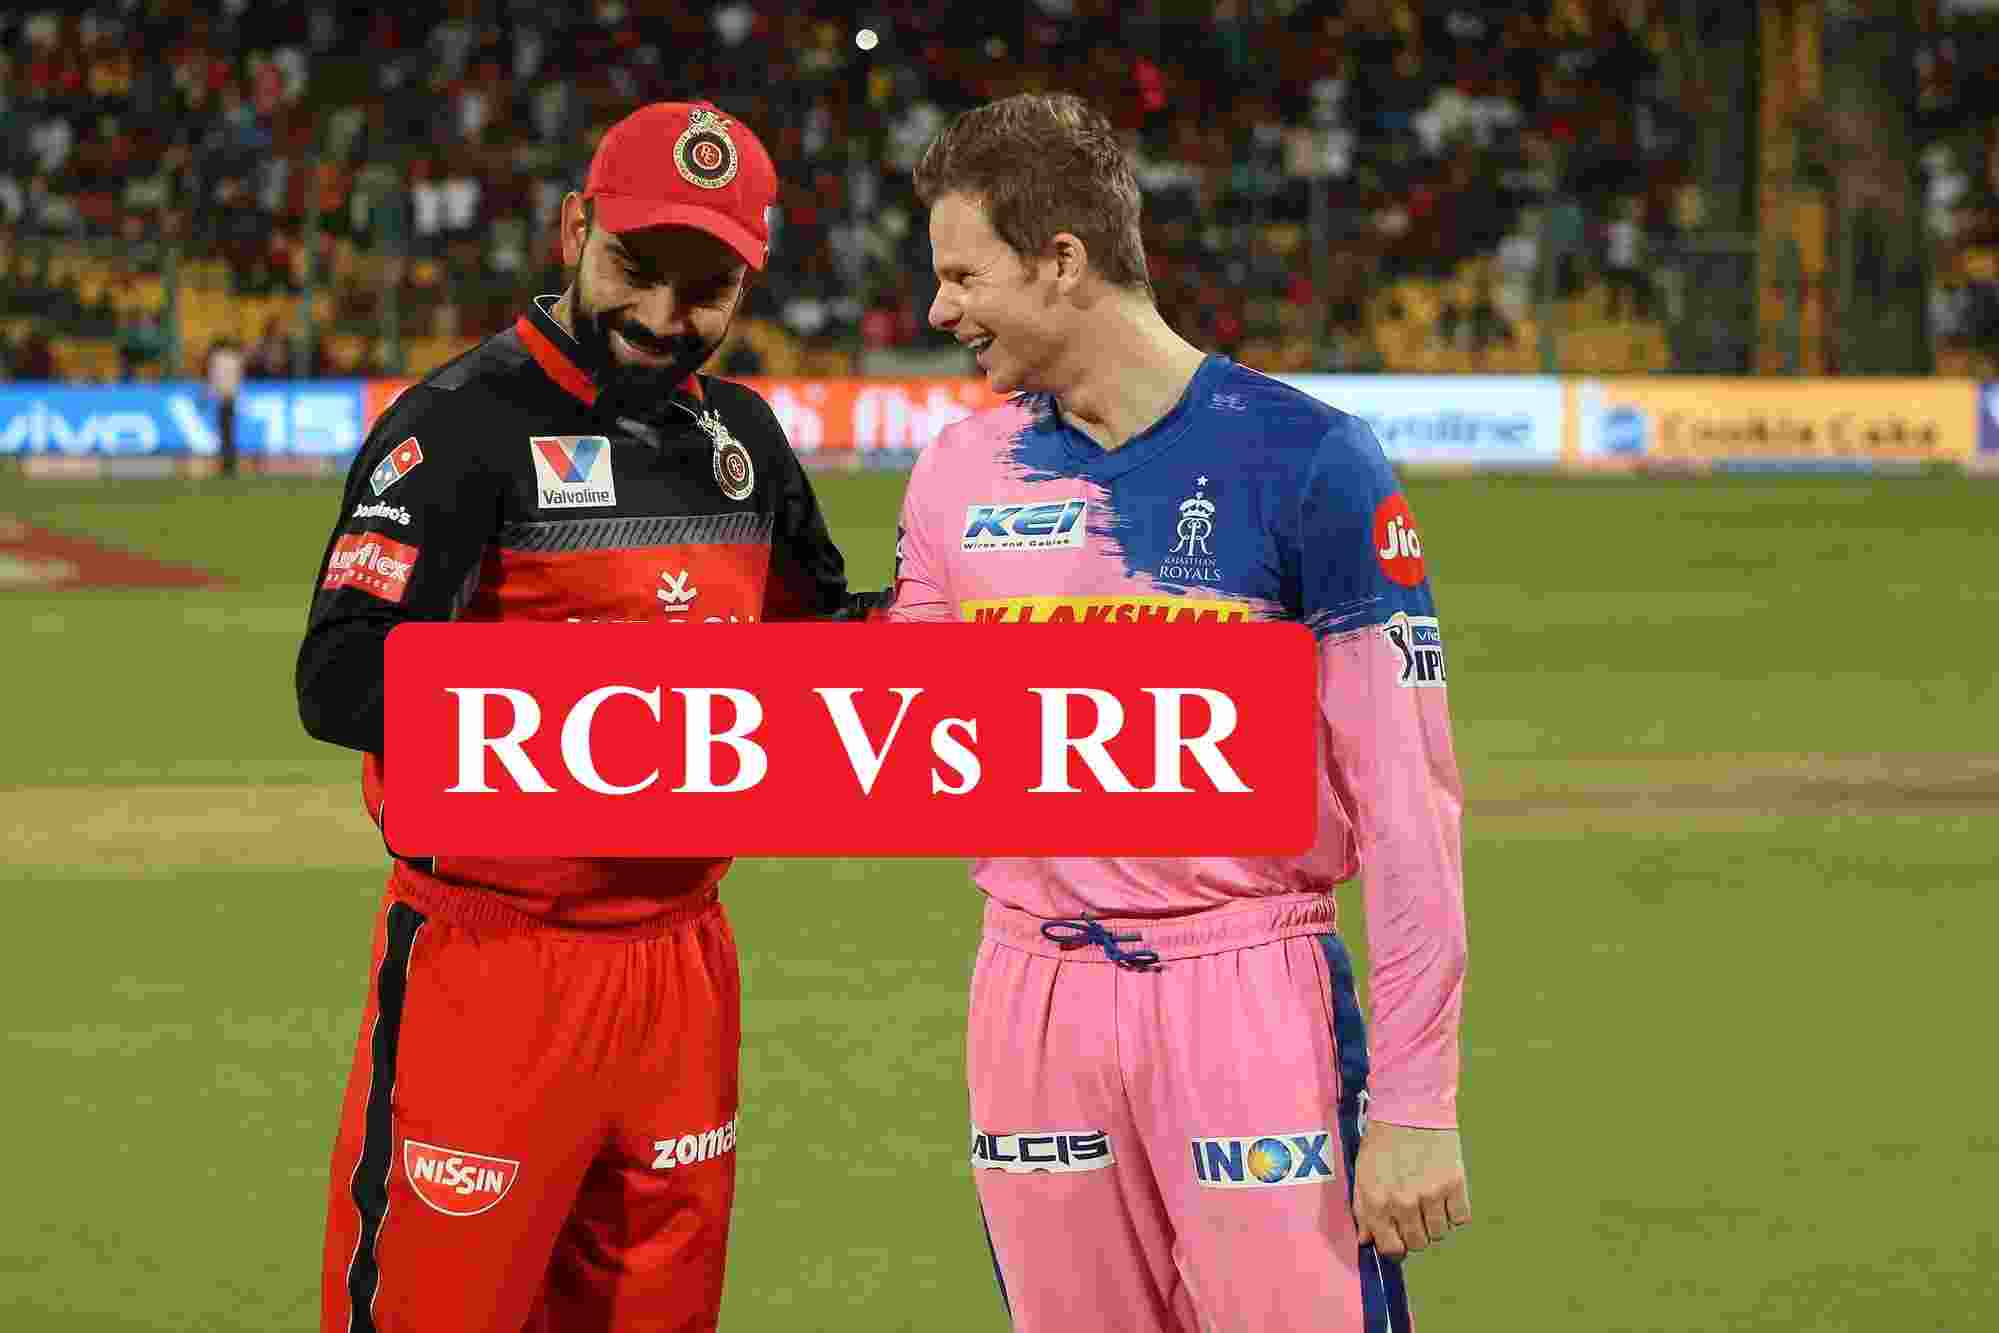 RCB vs RR दोनों टीमों में होगा कड़ा मुकाबला जानिए मैच से जुड़ी जरूरी ख़बर